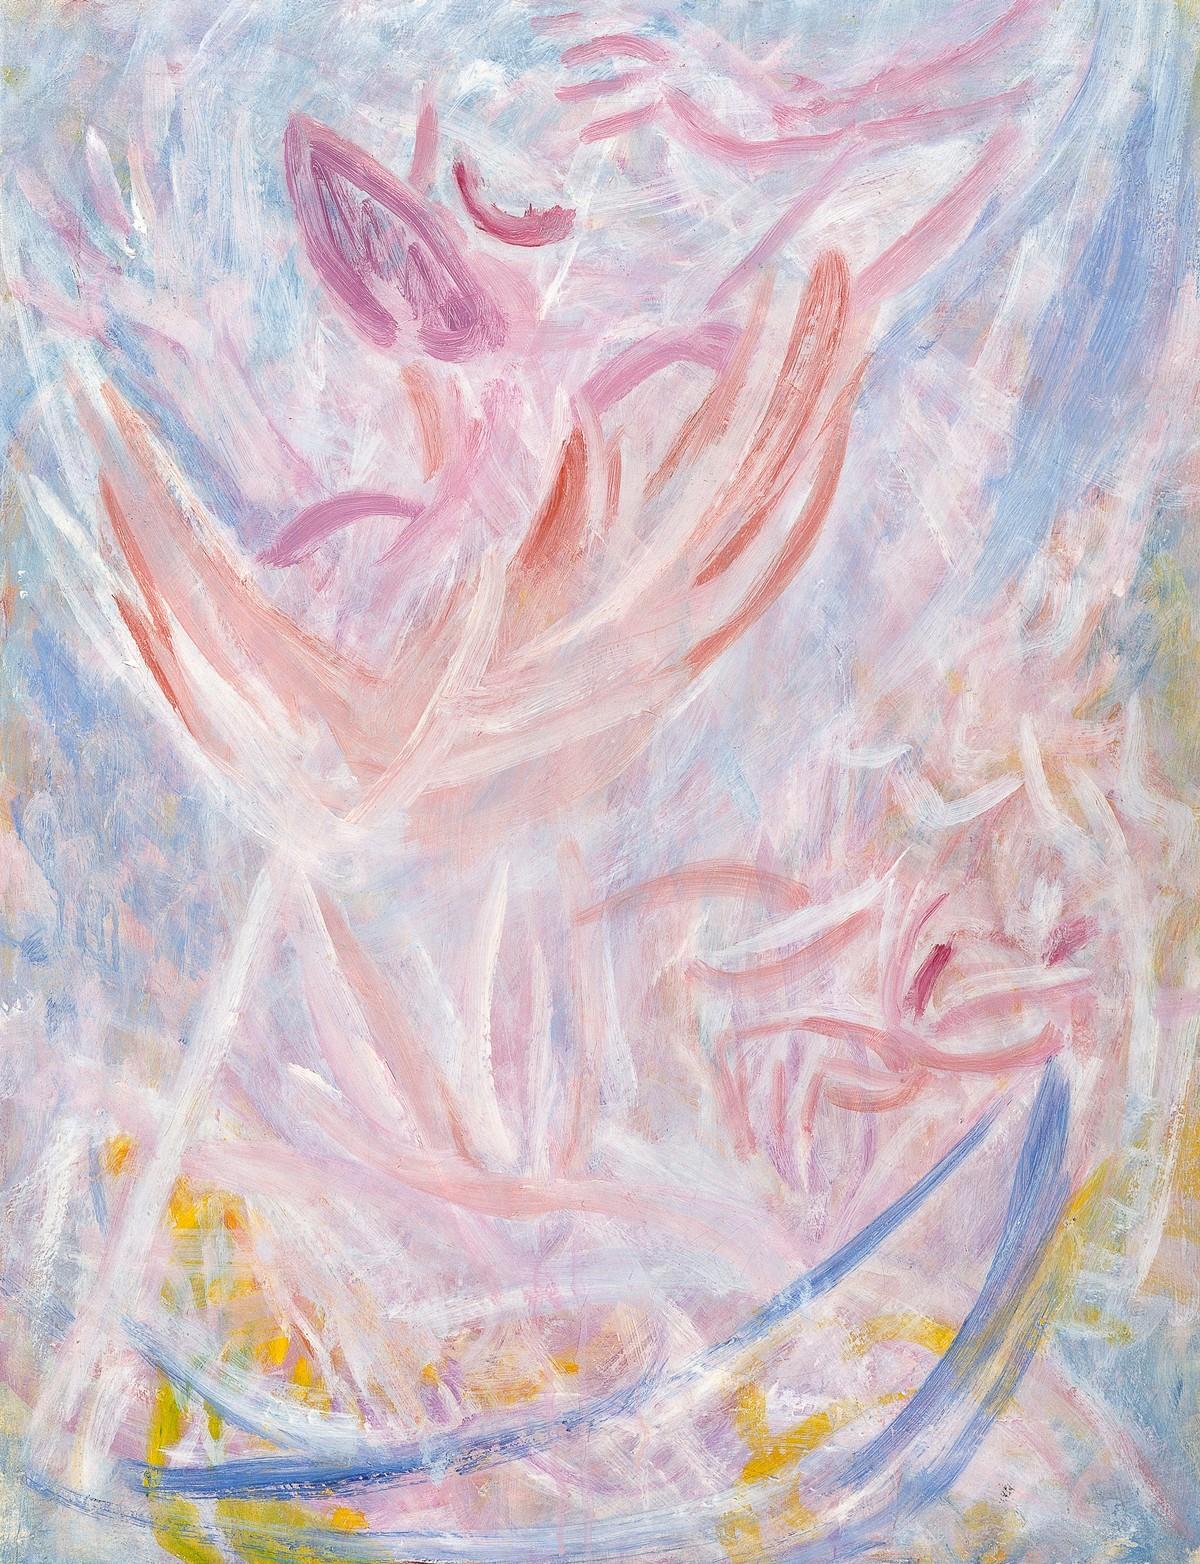 Seitsemänkymppisen Ellen Thesleffin maalaukset lähenivät abstraktia ilmaisua. Ikaros on maalattu 1940-luvun lopulla. Kuva Hanna Kukorelli / Helsingin taidemuseo.